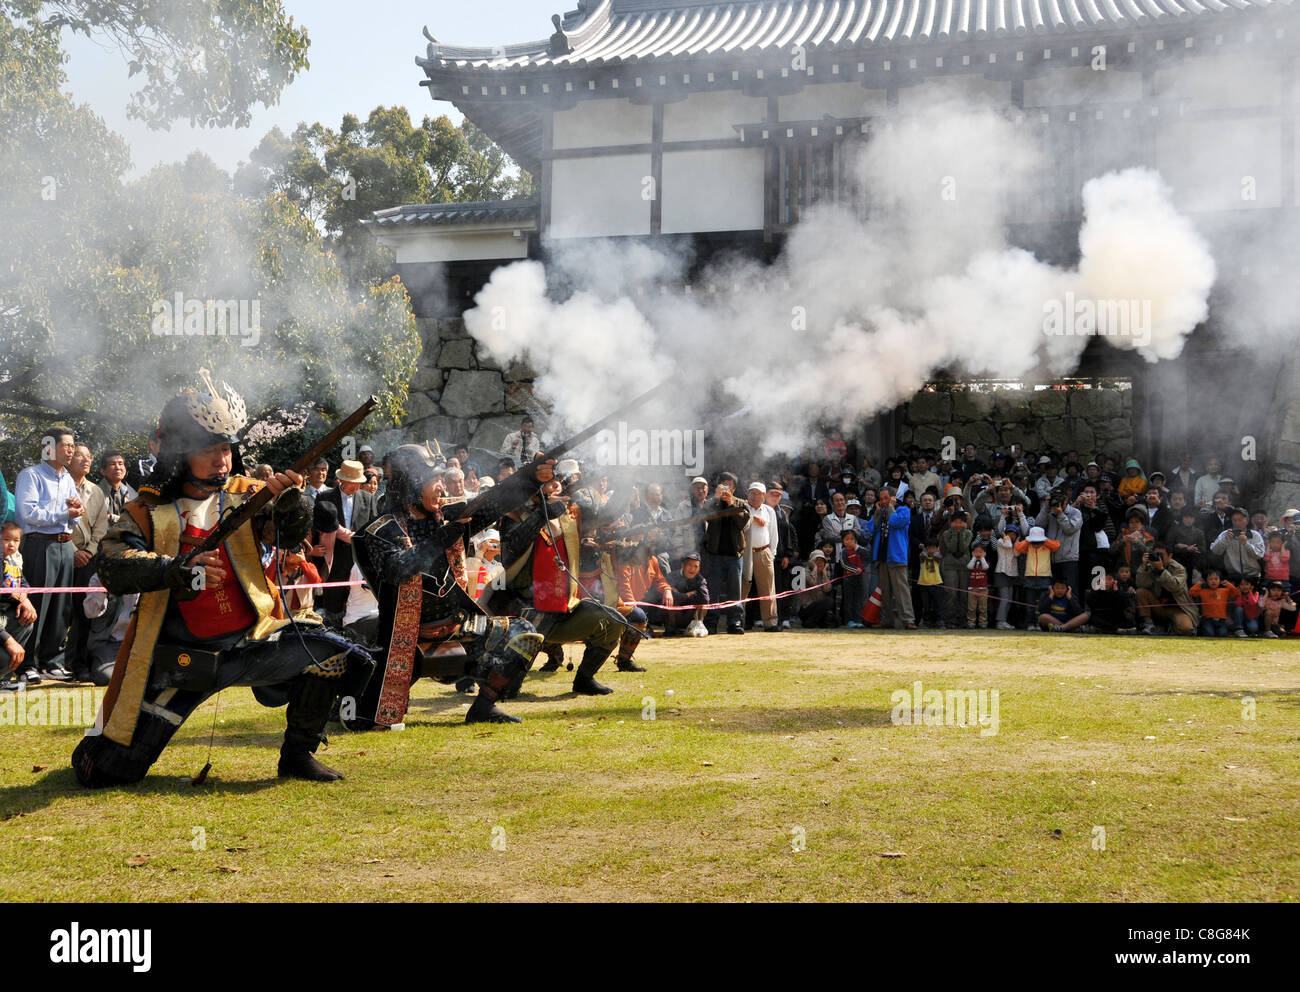 Riproduzione del festival come per la lotta contro l'antichità del Giappone Foto Stock